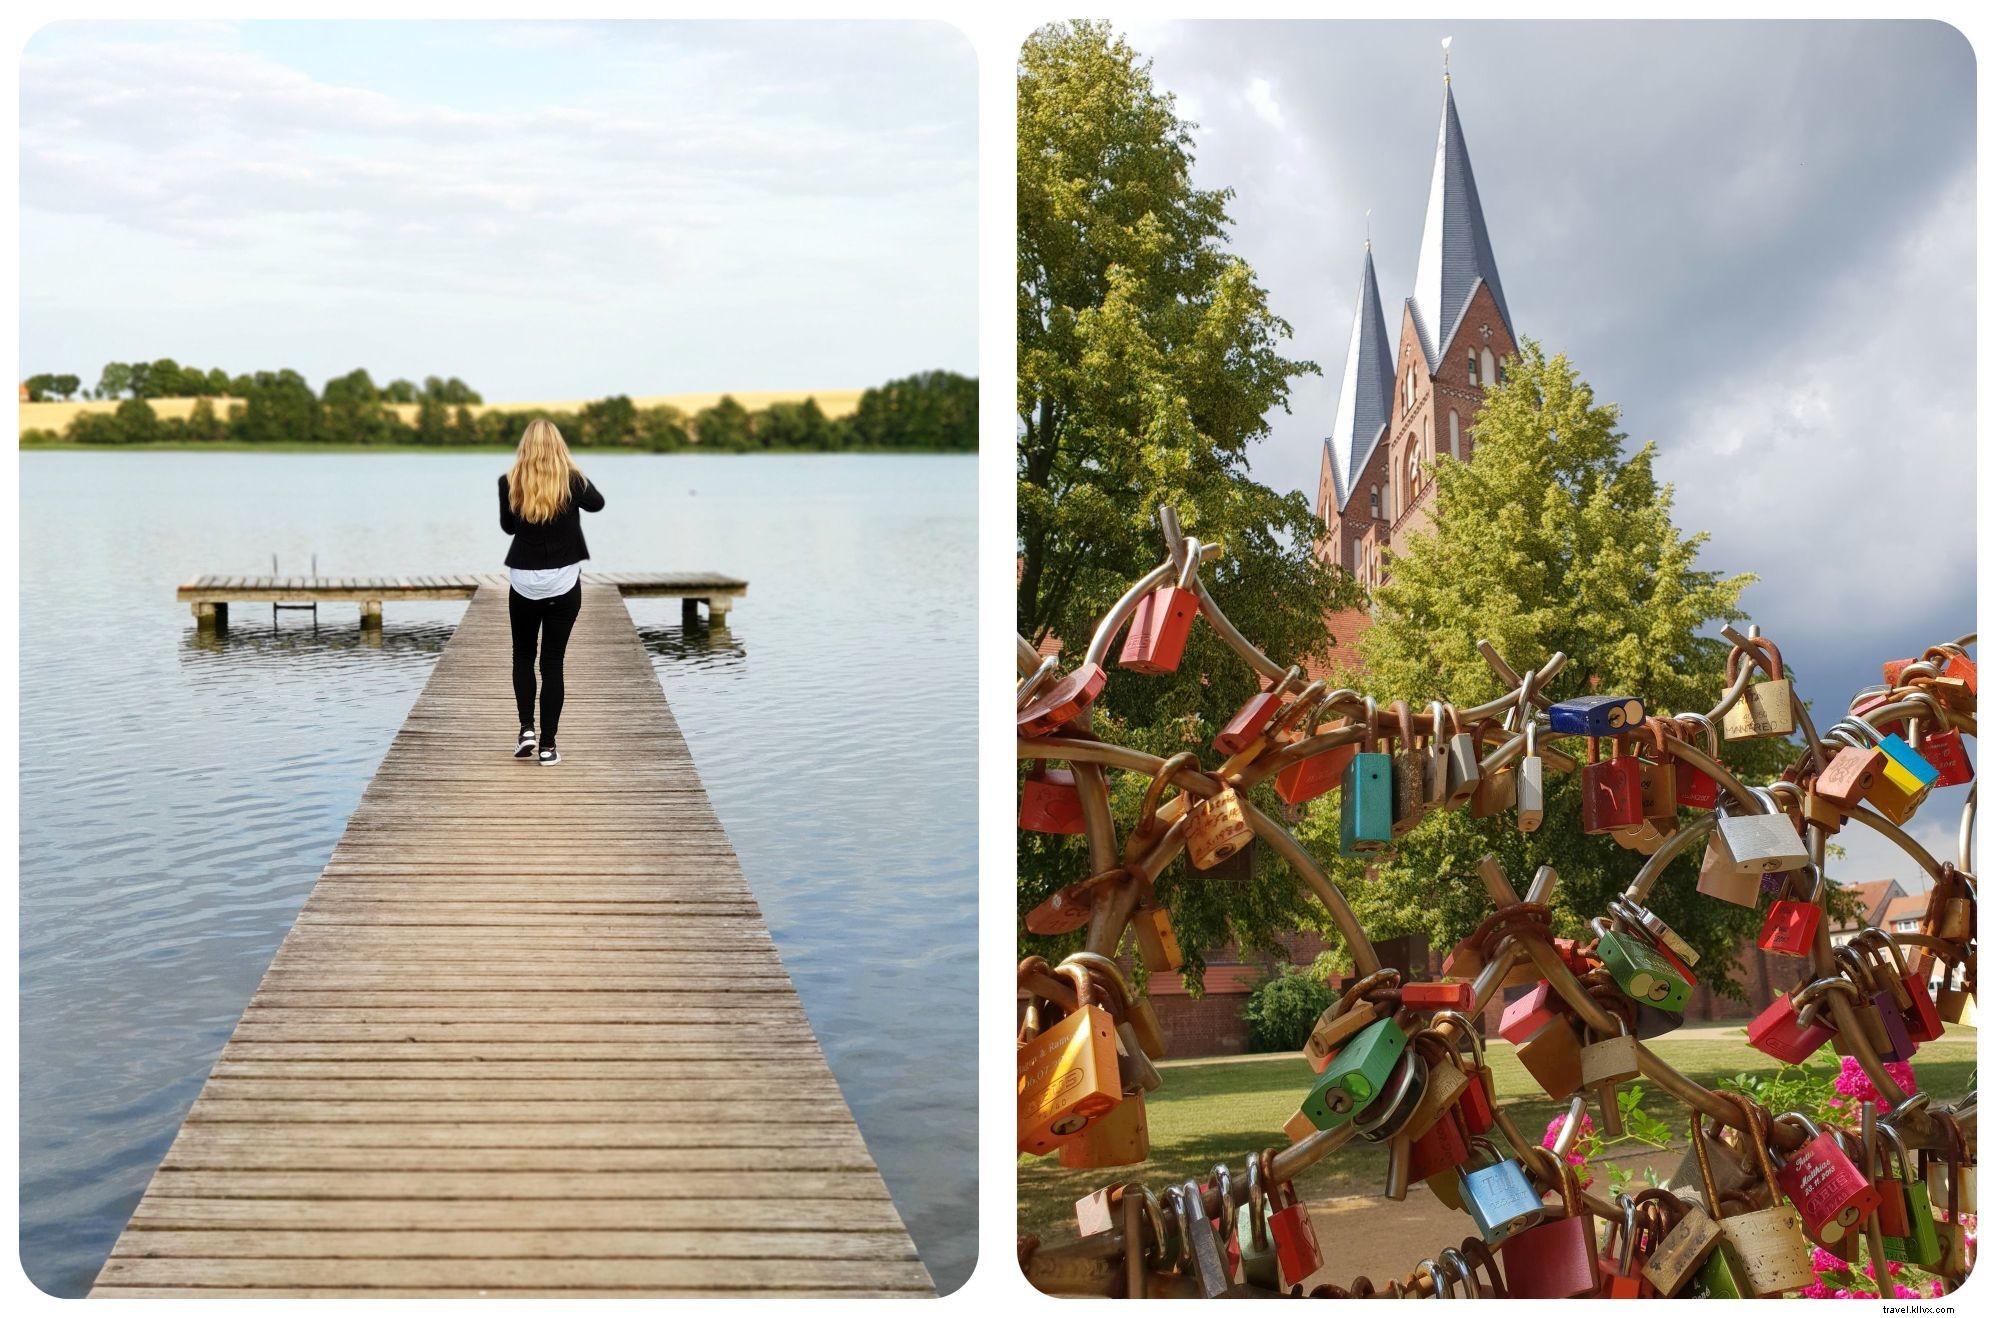 danau, Kastil dan Pantai:Perjalanan Jalan Jerman Utara